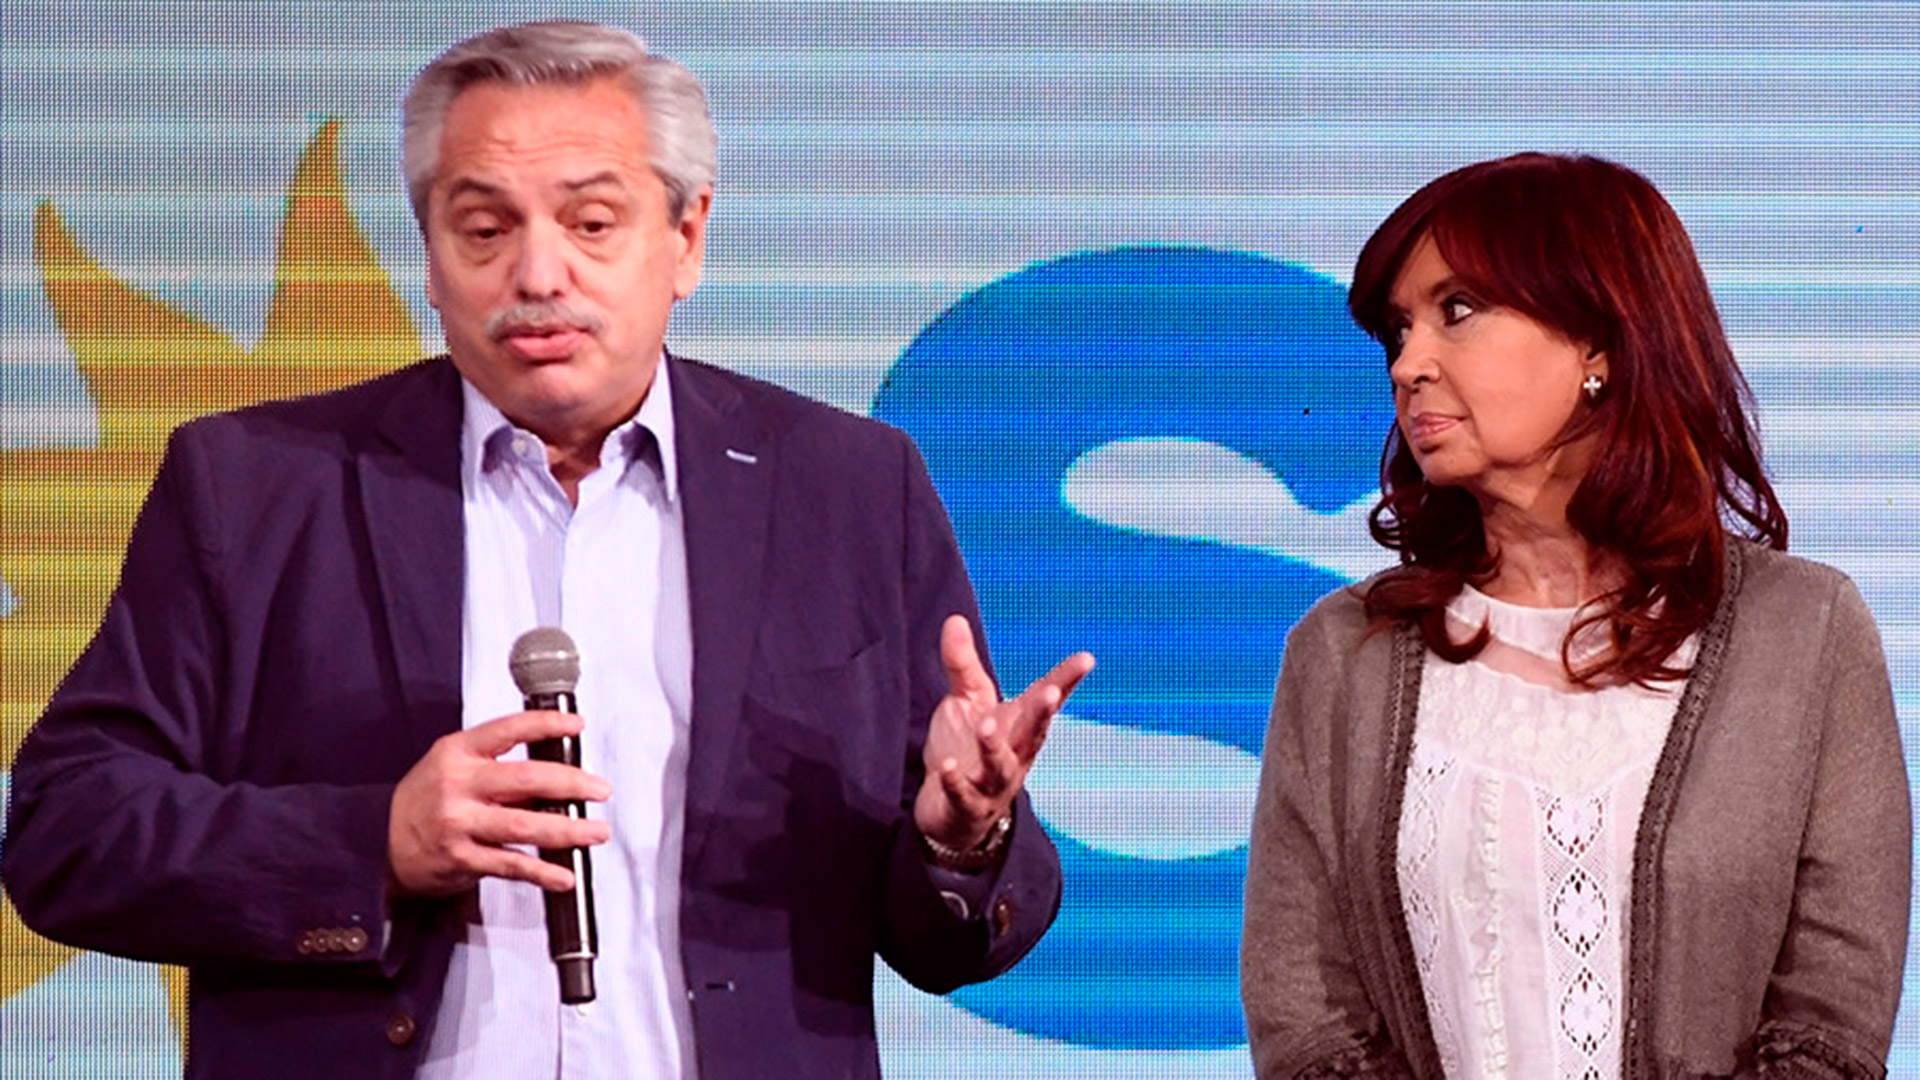 La relación entre Alberto Fernández y Cristina Kirchner pasa por el peor momento desde que comenzó el gobierno del Frente de Todos 